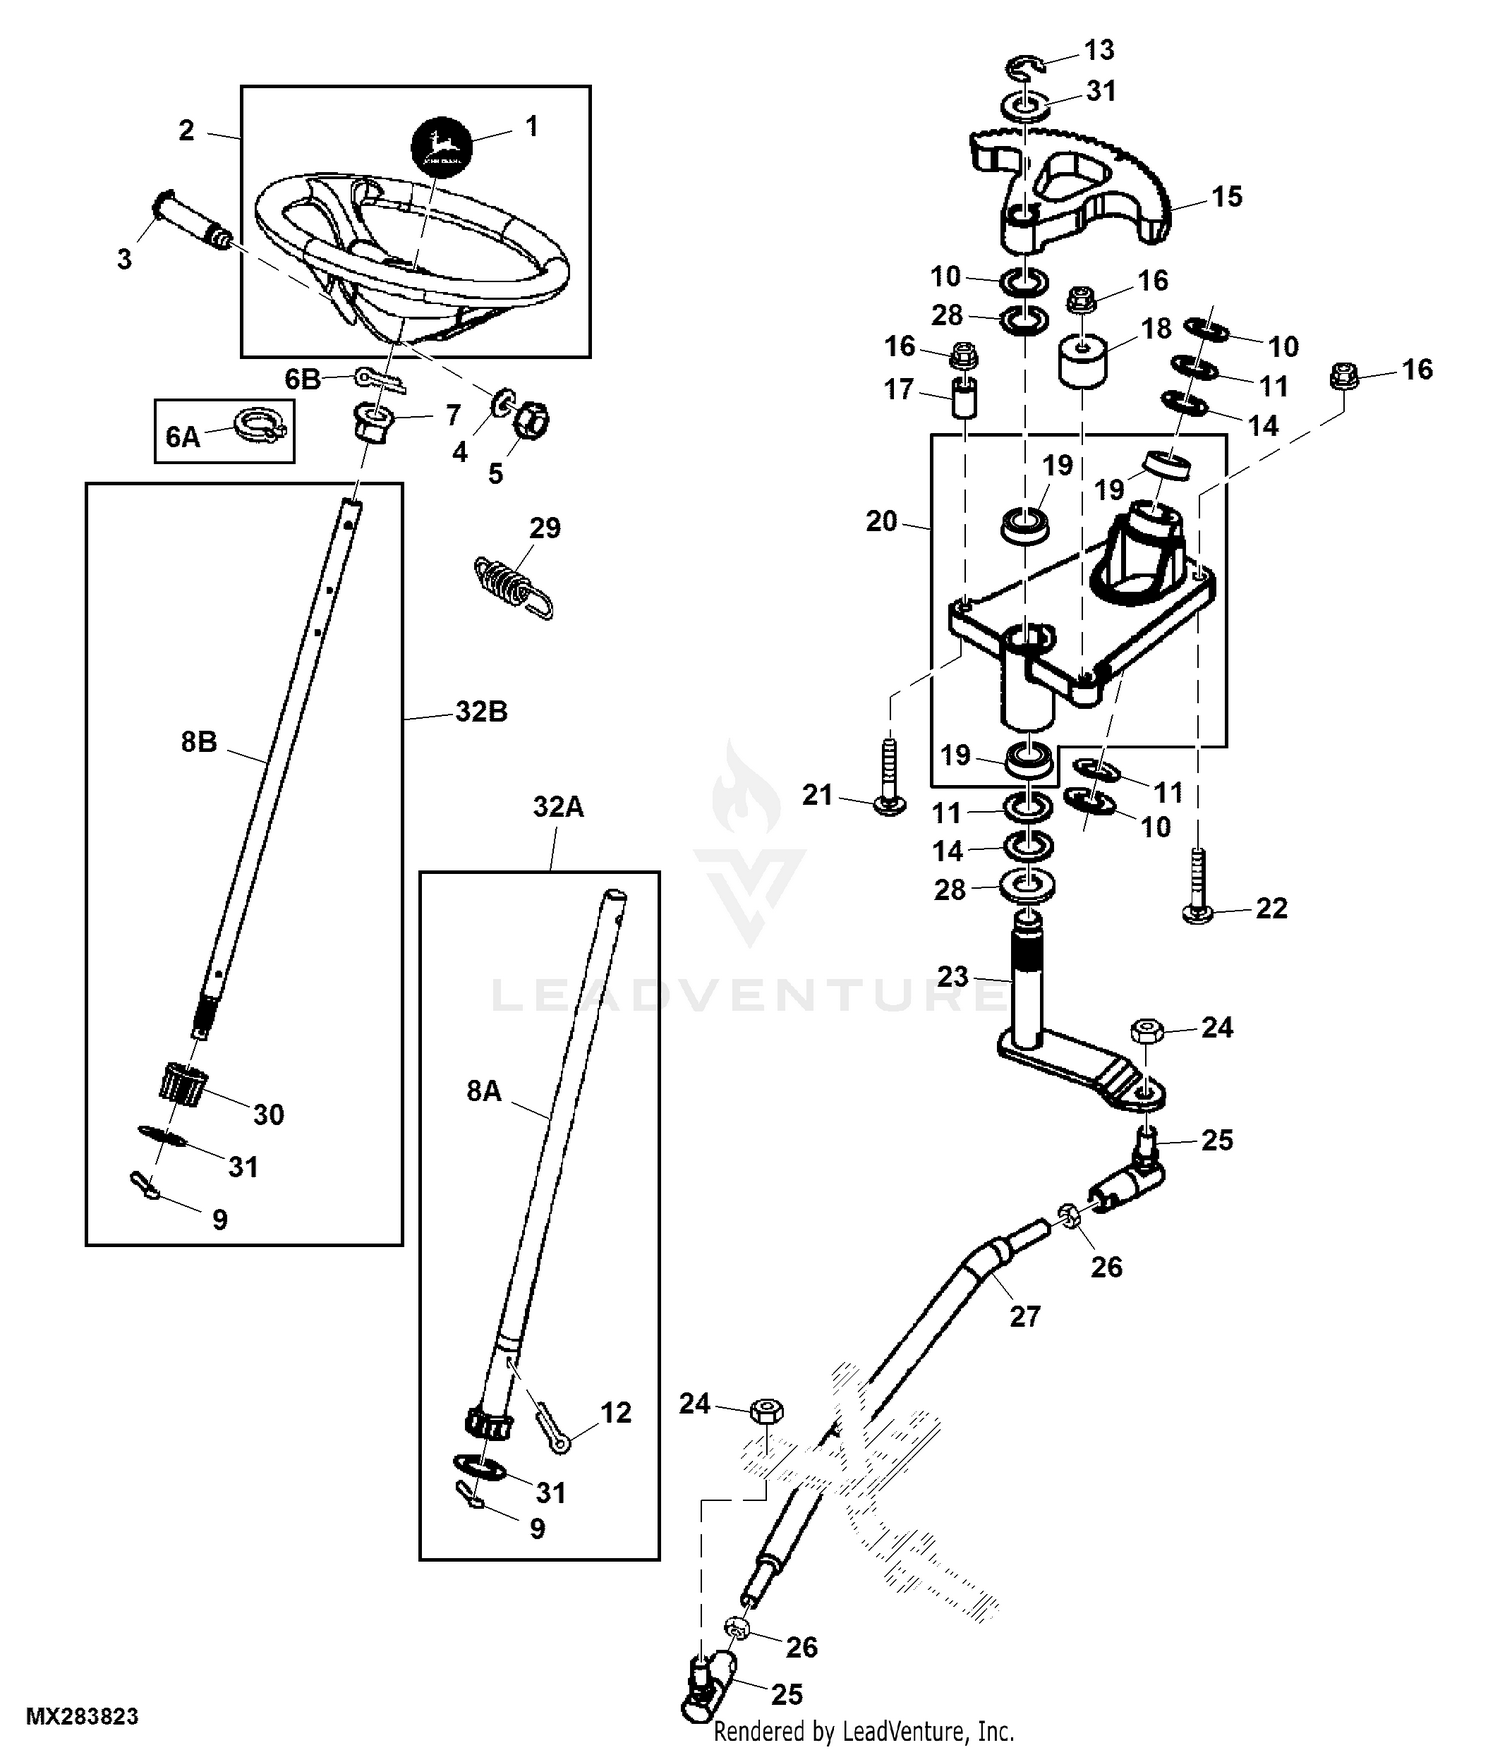 41 john deere gt235 deck belt diagram Diagram Online Source